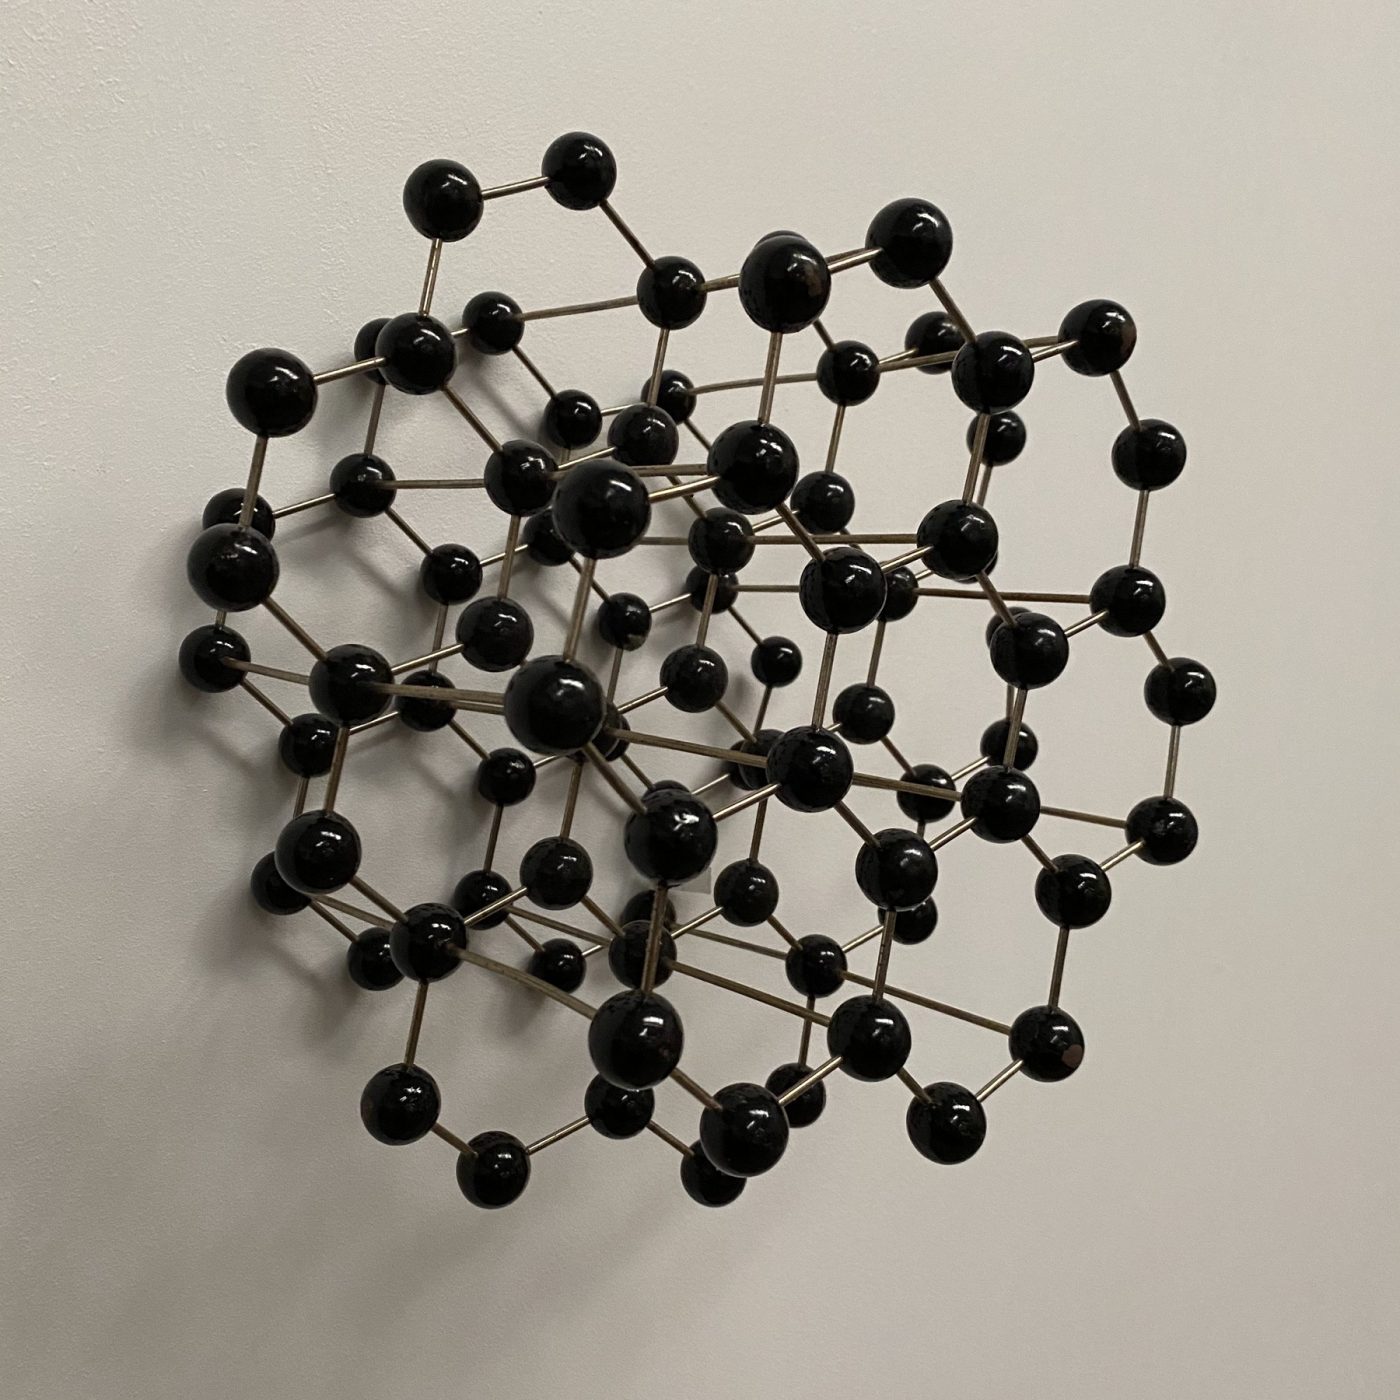 objet-vagabond-didactique-molecule0003